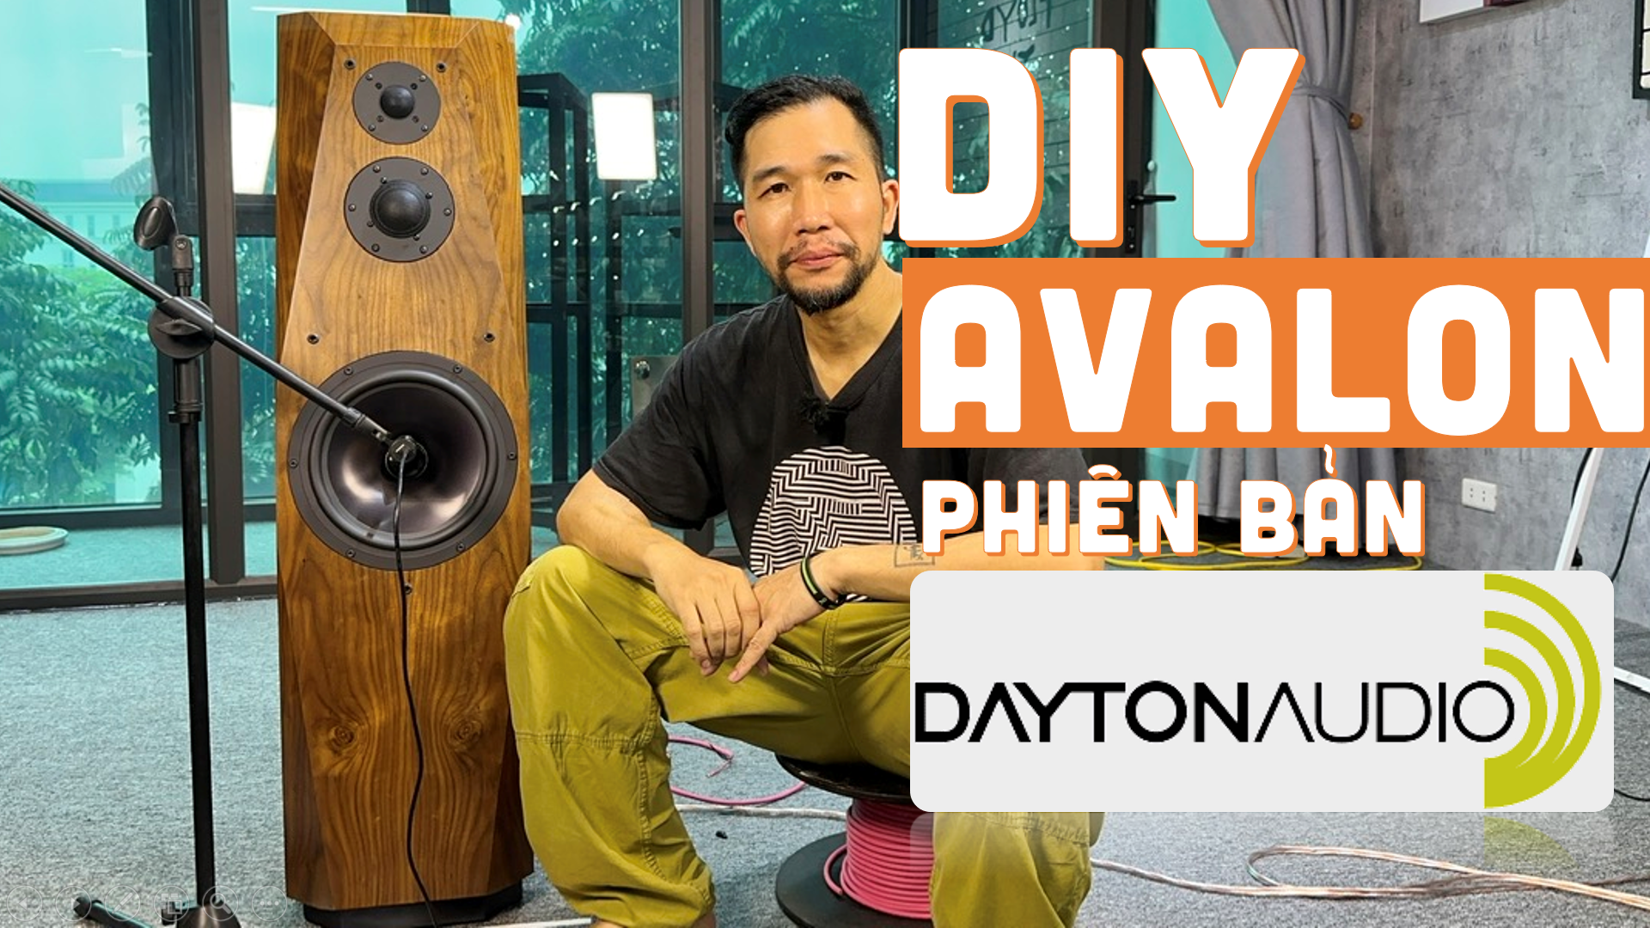 DIY loa Avalon phiên bản ngon bổ rẻ đẹp, sử dụng củ loa của Dayton Audio